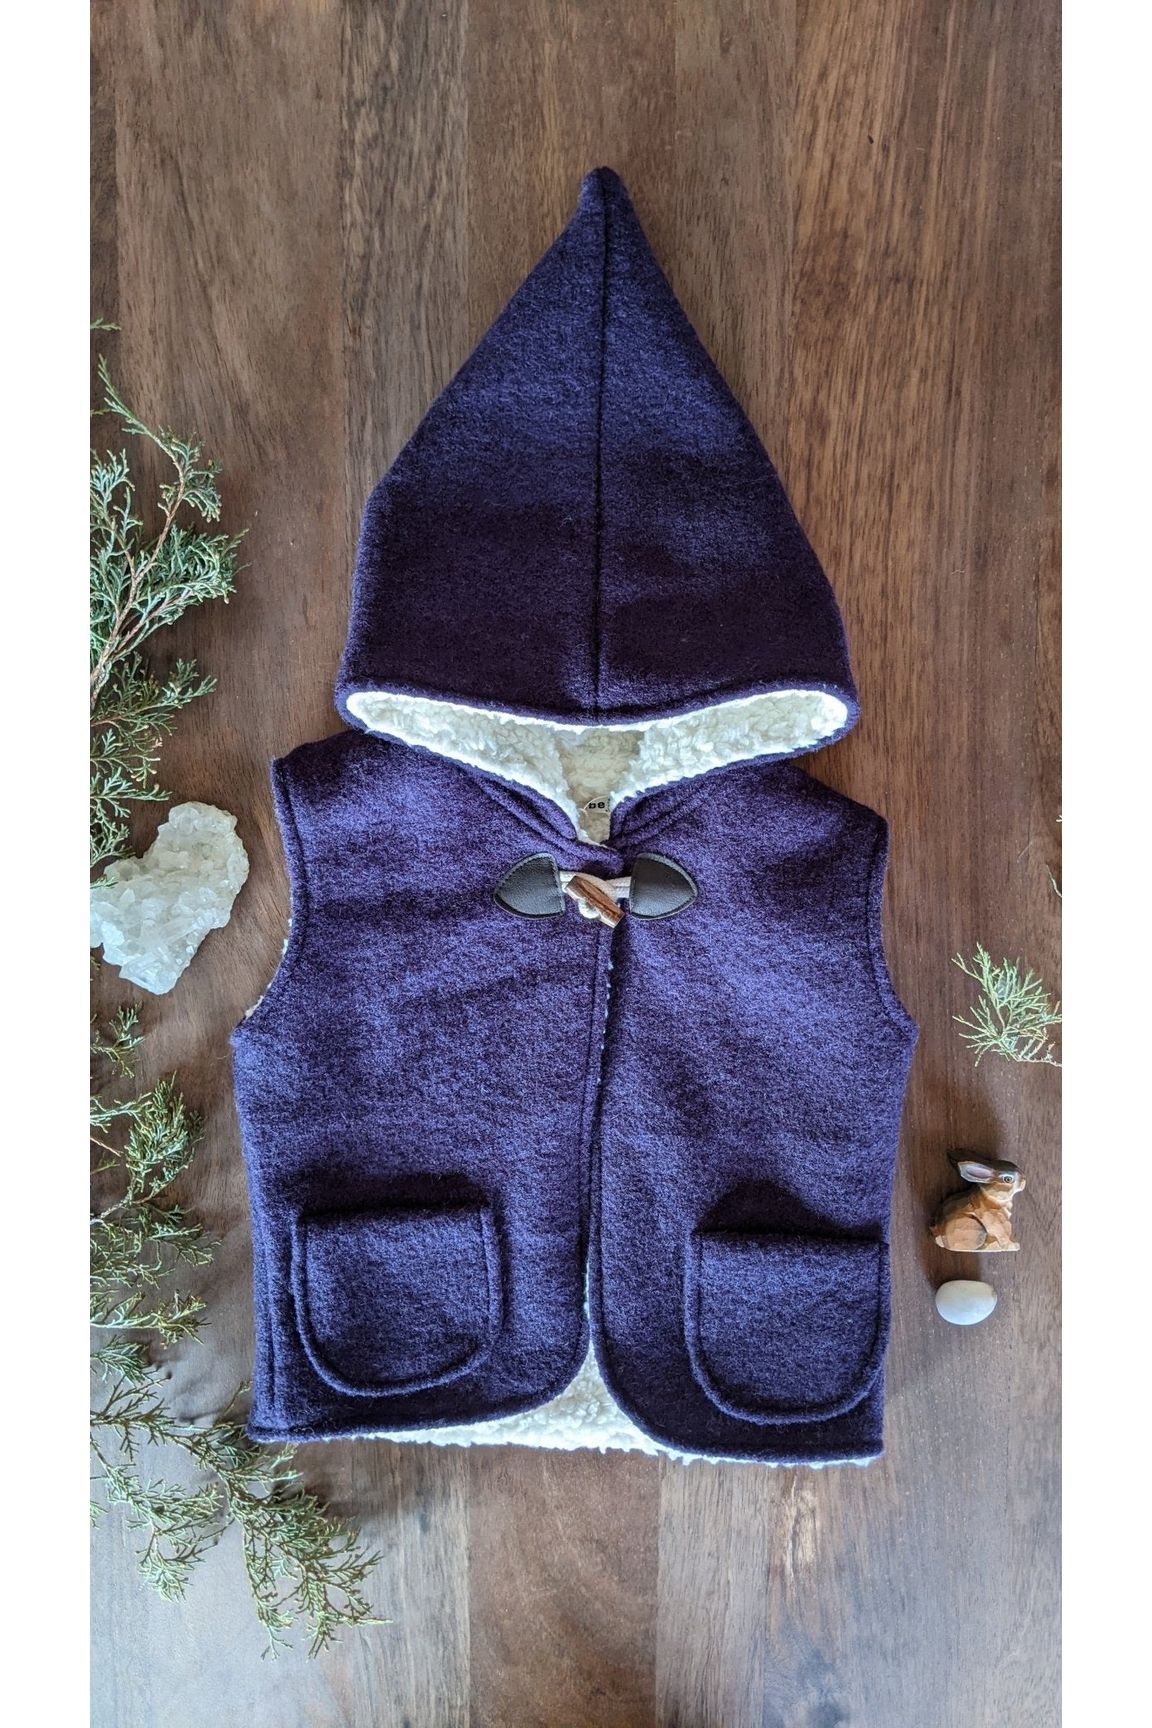 Kleine Schobbejak - Wool Hooded Pixie Vest - Dark Purple - Nature's Wild Child